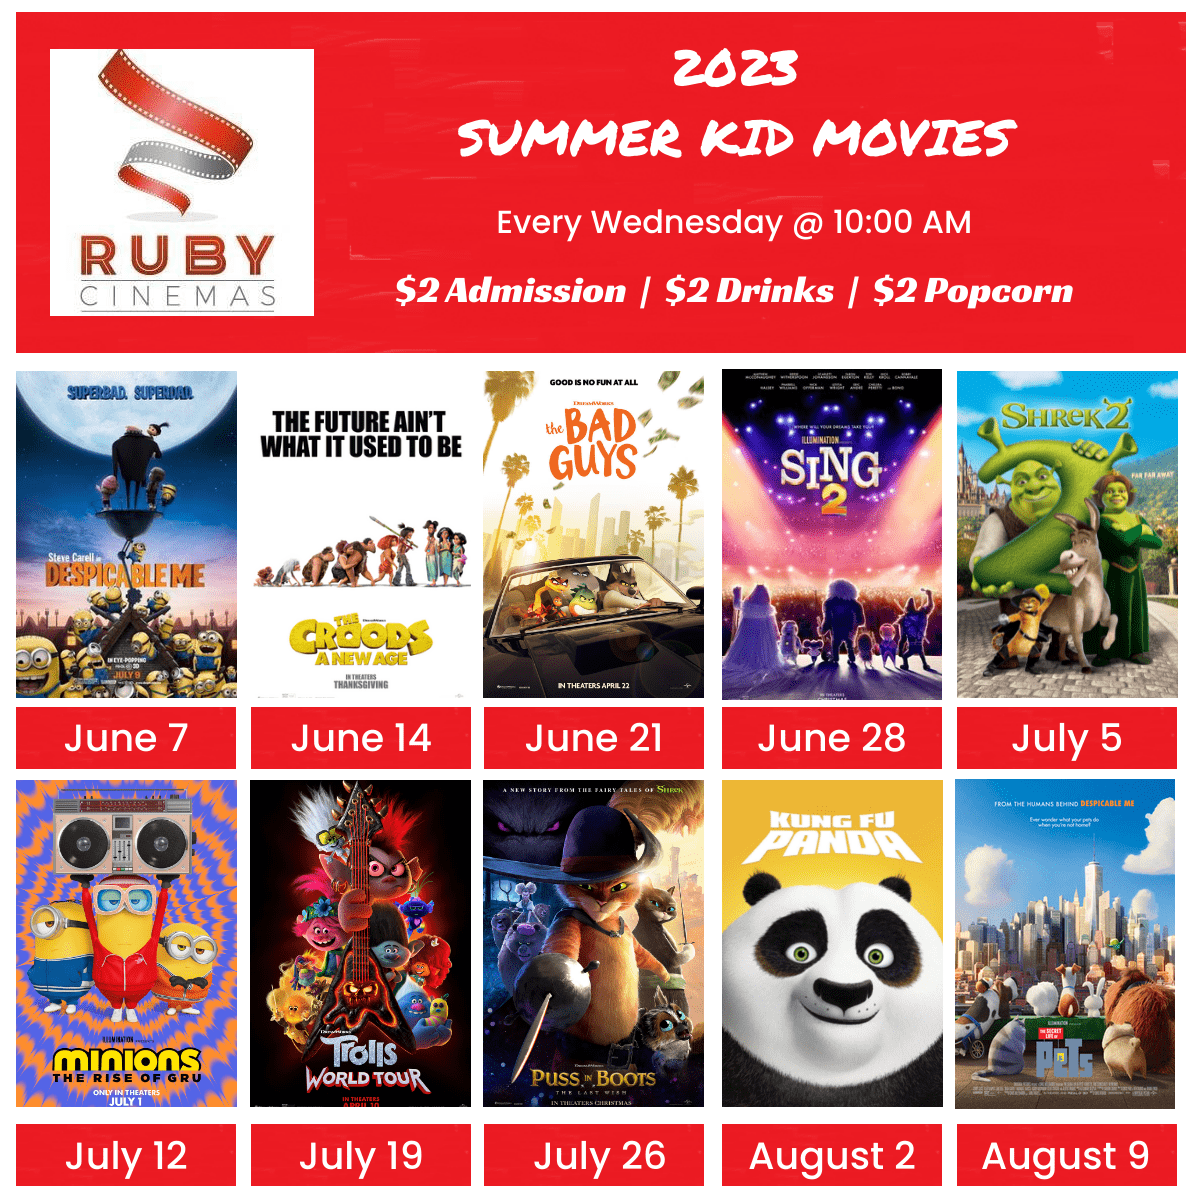 2023 Ruby Cinemas Summer Kid Movies